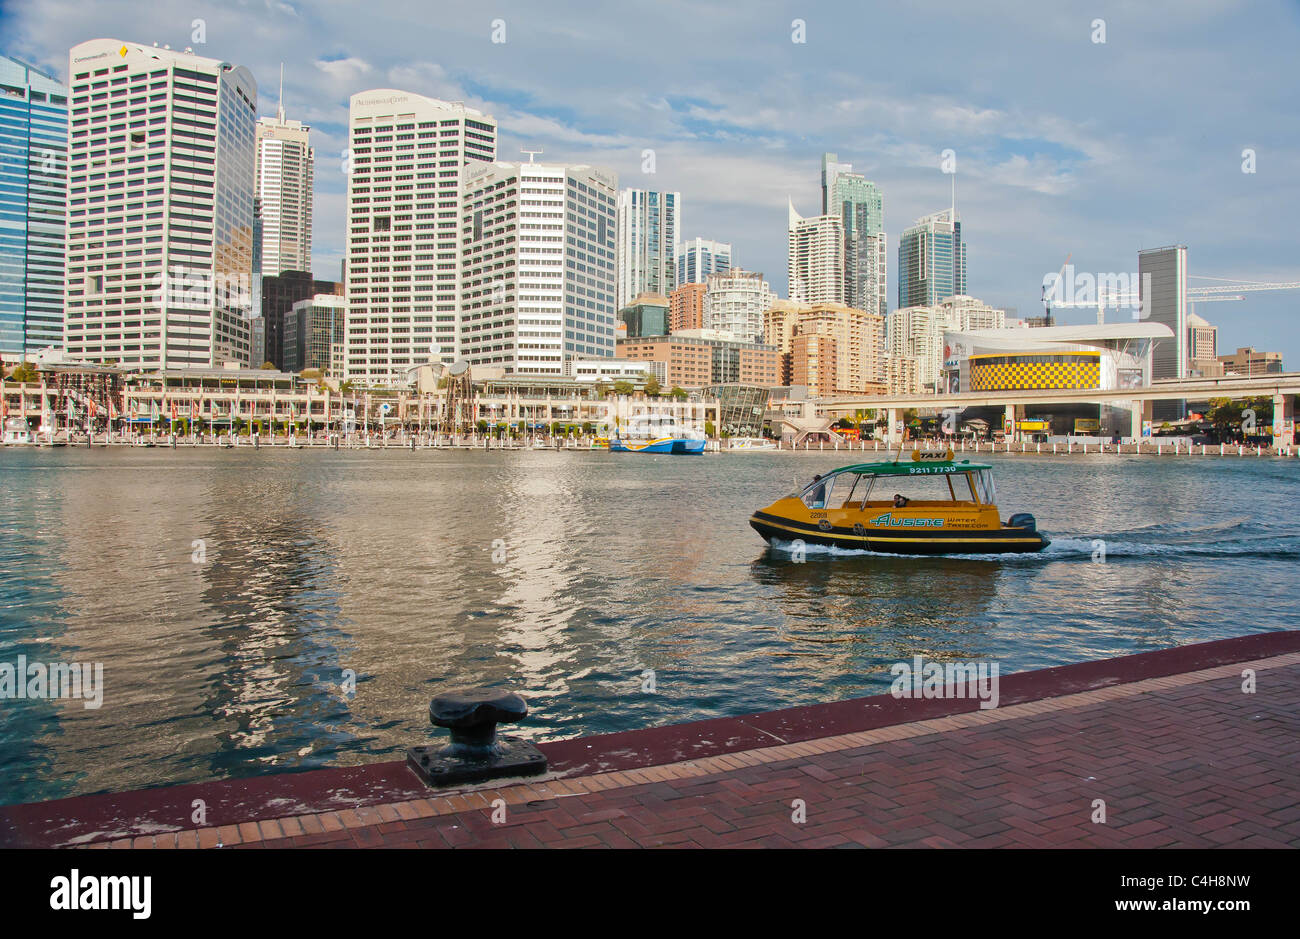 Skyline e paesaggio urbano a Sydney in Australia Foto Stock